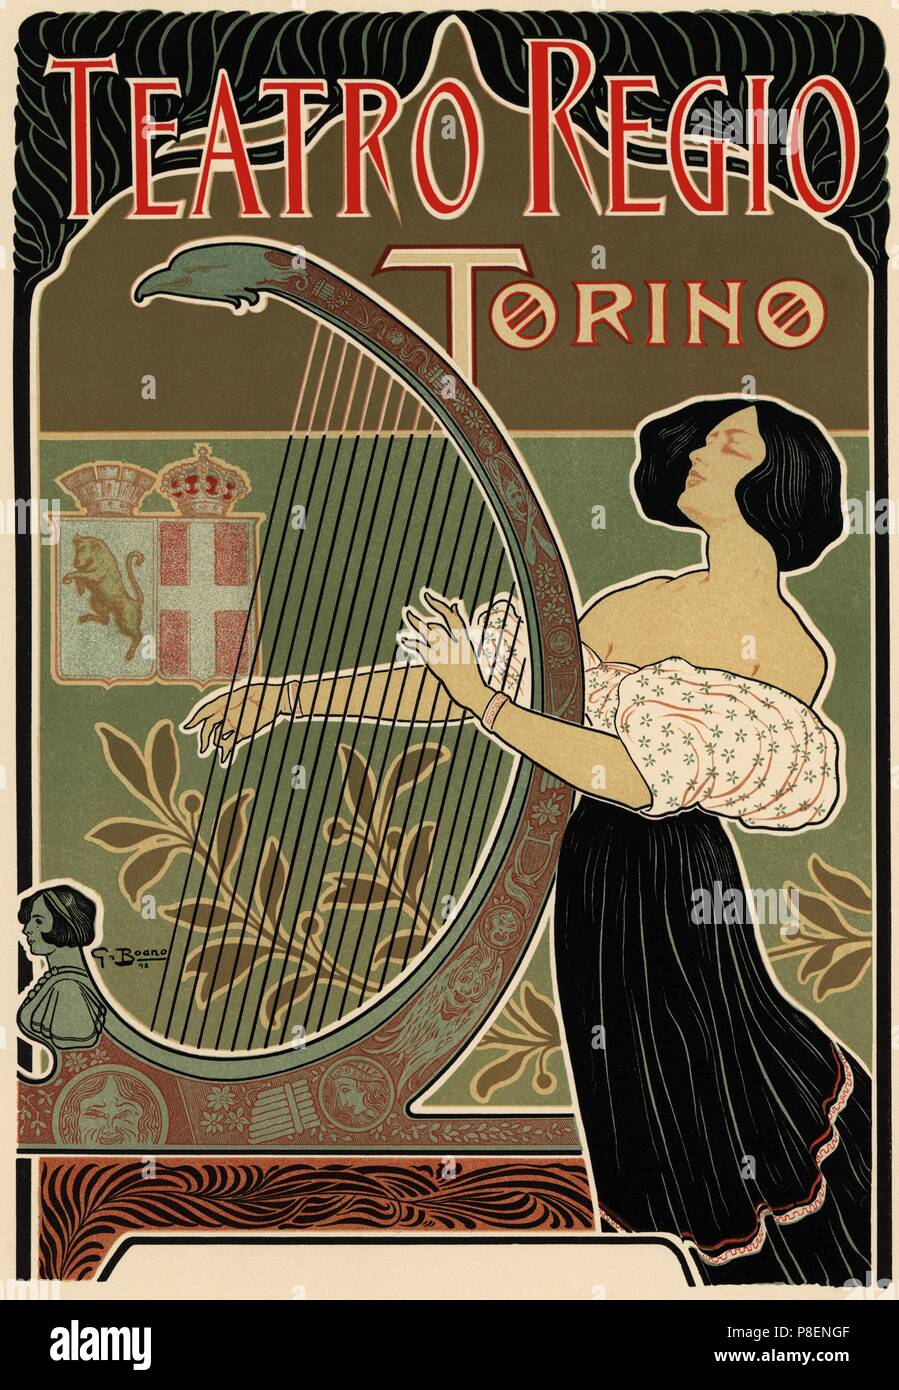 Teatro Regio Torino (poster). Museo: Collezione privata Foto stock - Alamy